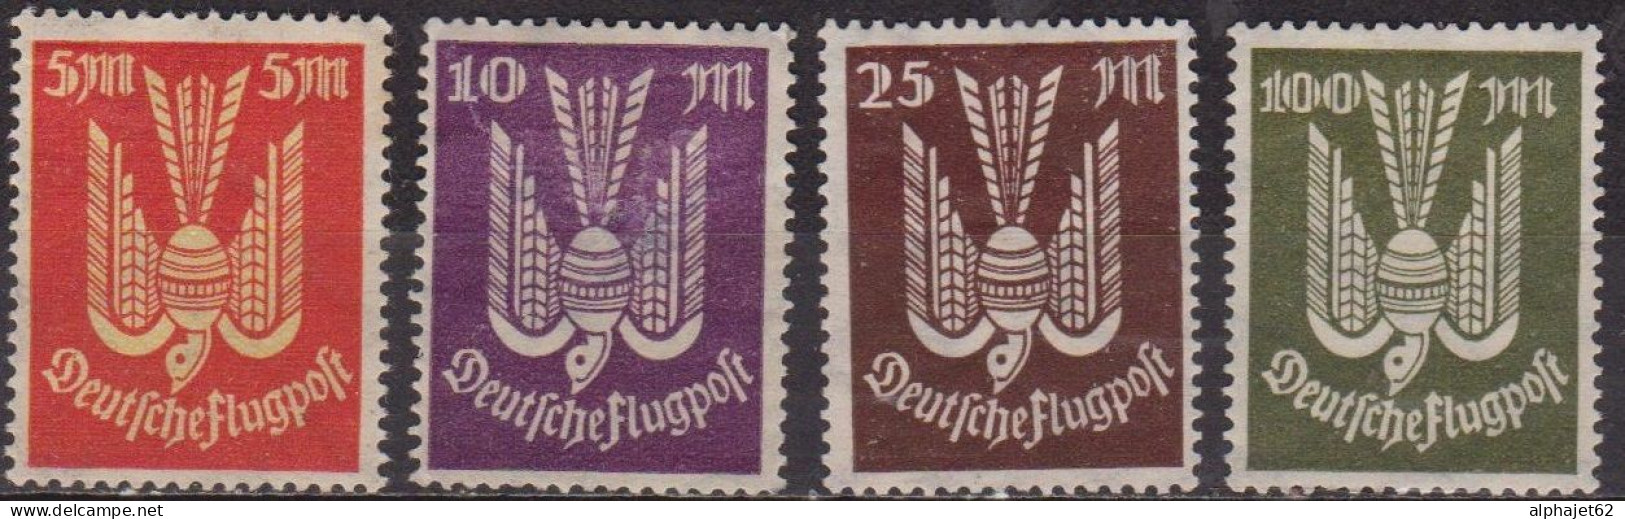 Oiseau - ALLEMAGNE - Deutsche Flugpost - Poste Aérienne - N° 15-16-17-18 * - 1922 - Poste Aérienne & Zeppelin